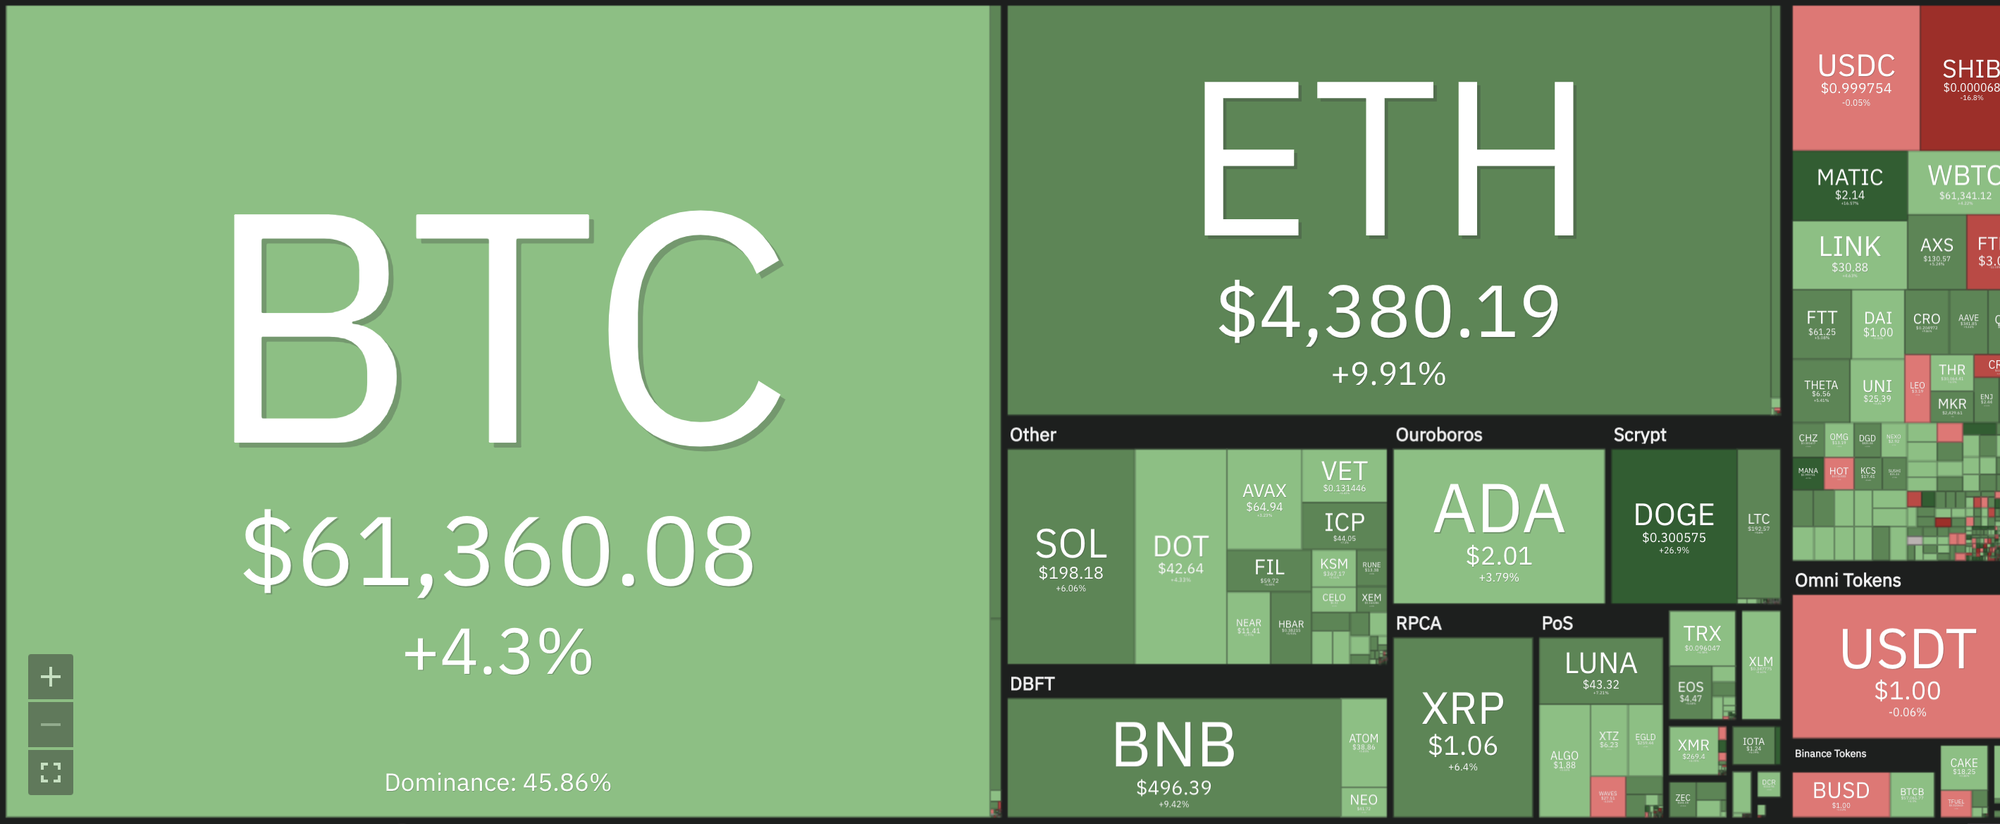 Giá Bitcoin hôm nay: Áp lực mua gia tăng, sắc xanh trở lại - Ảnh 7.